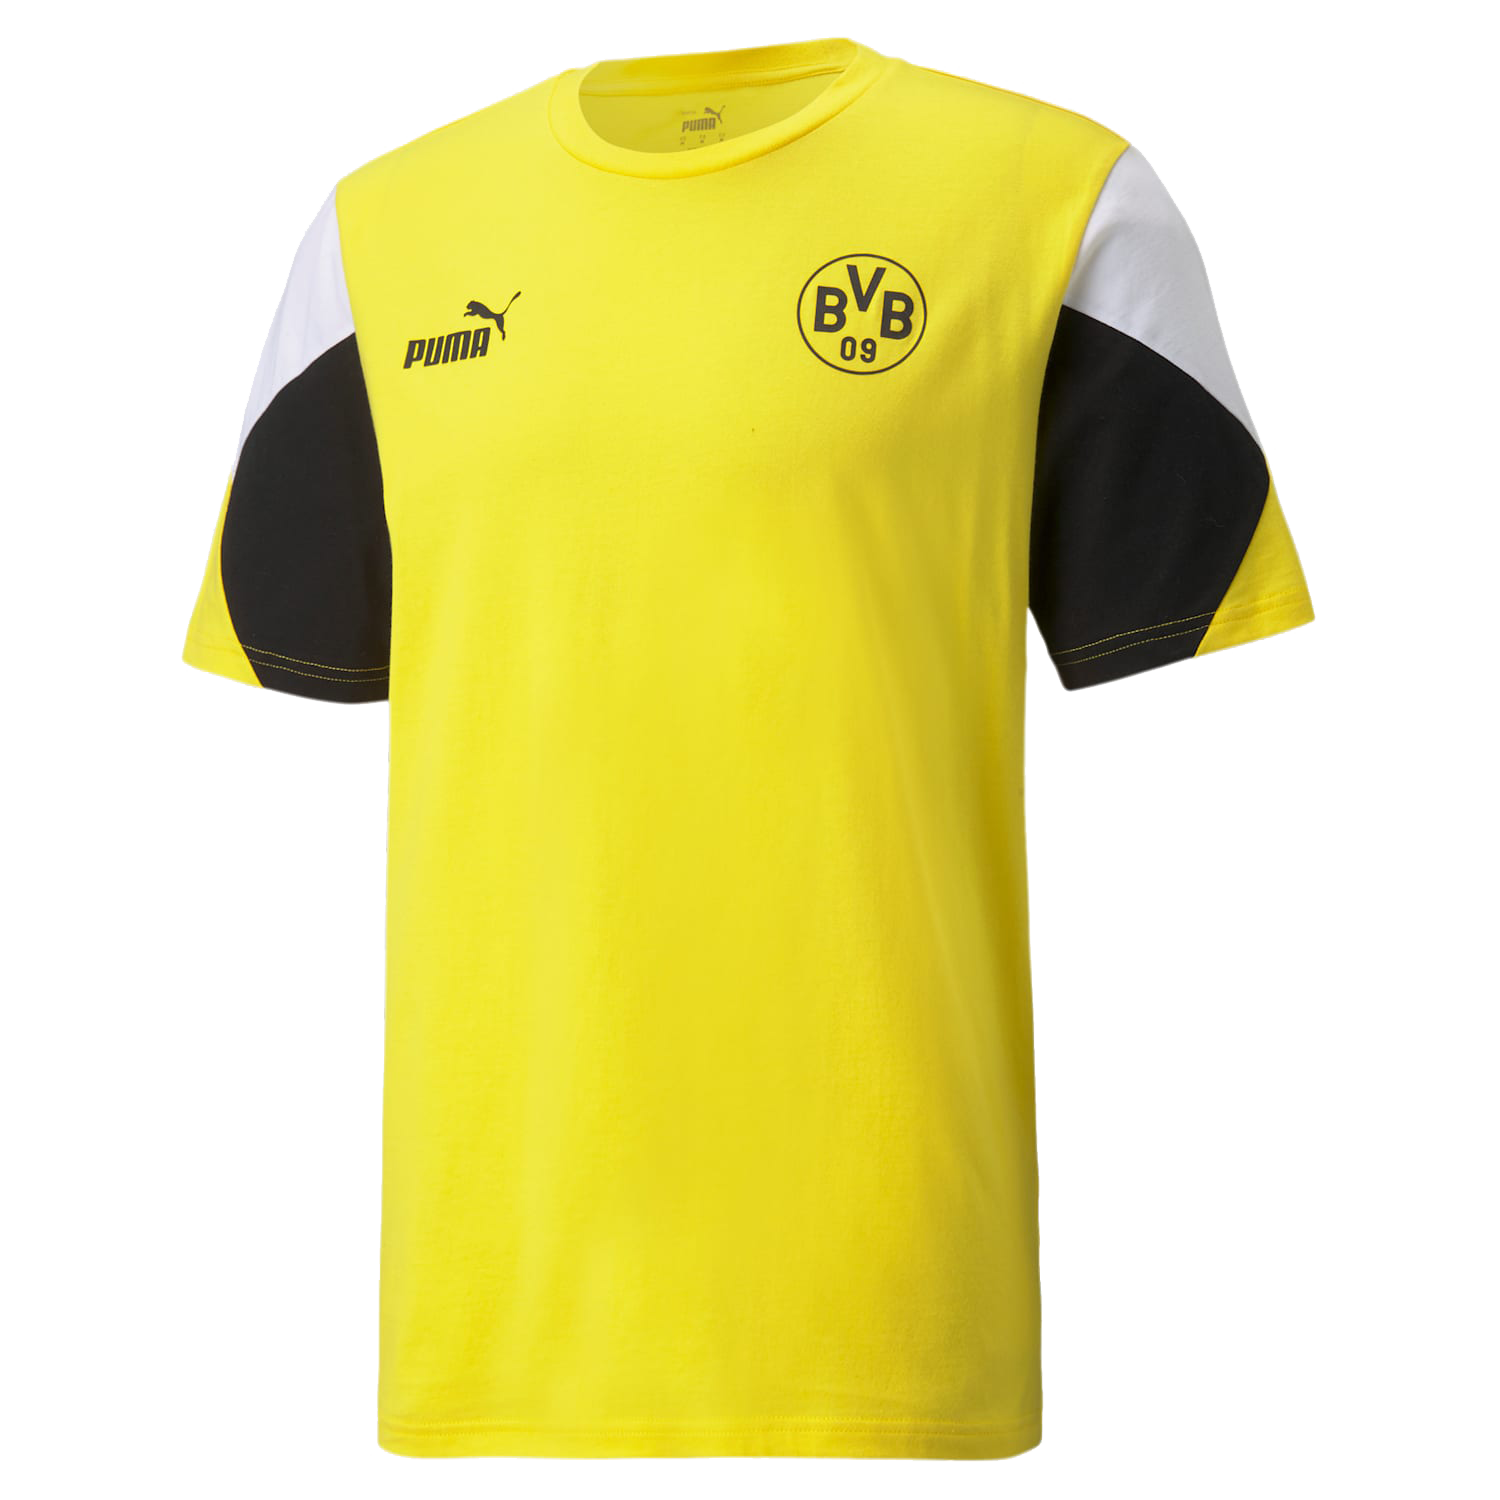 Puma Borussia Dortmund FtblCulture žlutá/černá UK S Pánské